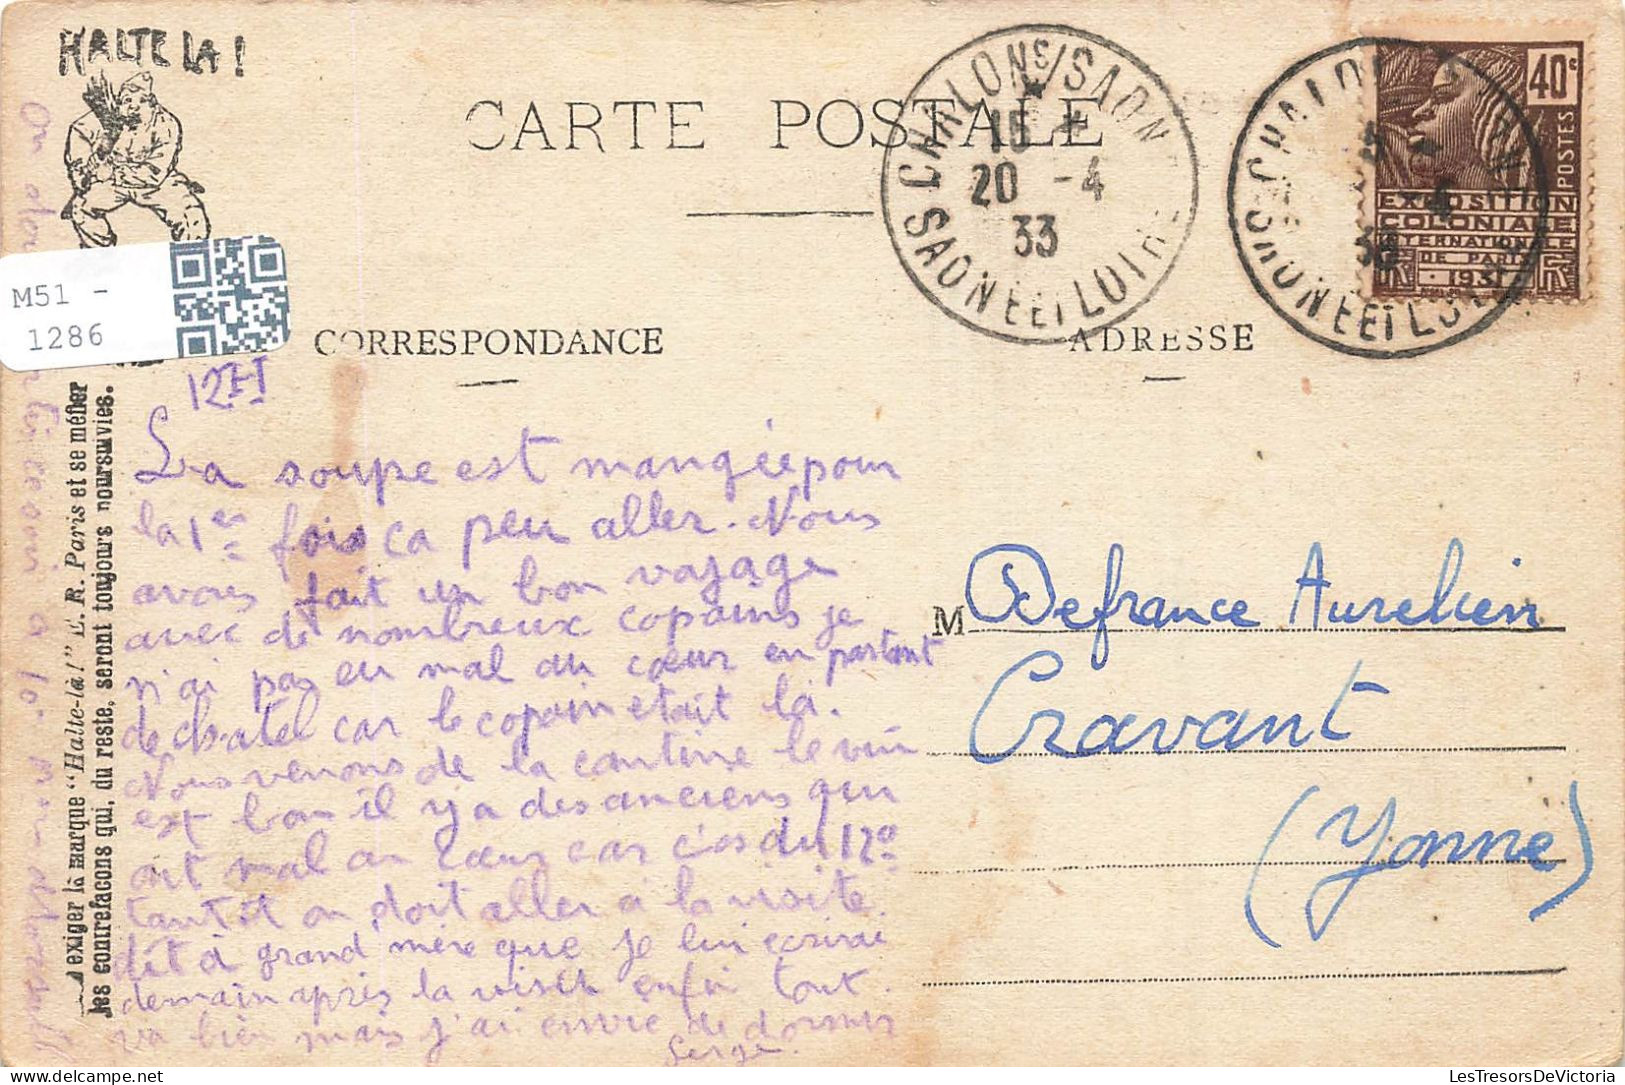 MILITARIA - Régiments - Sauts De Mouton - Dessin - Carte Postale Ancienne - Regimente